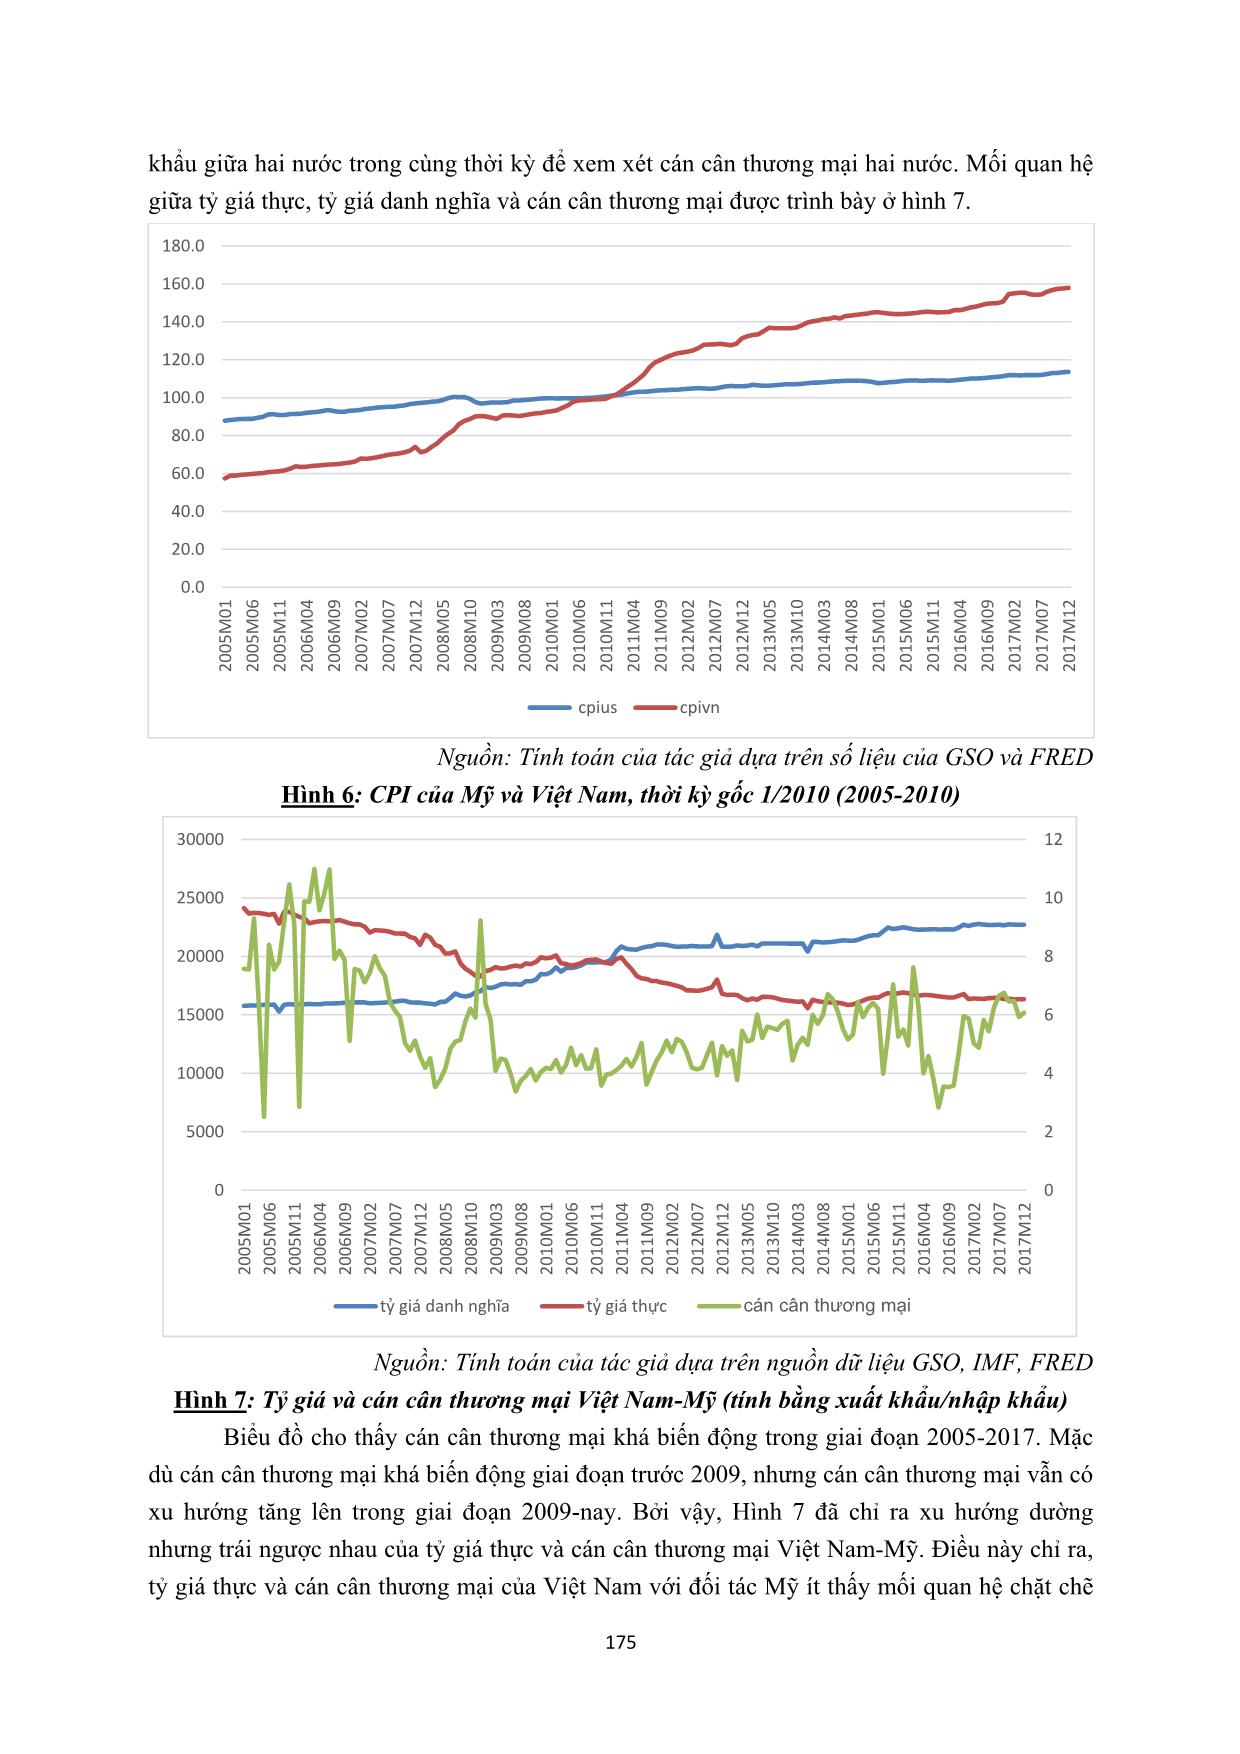 Tác động của tỷ giá đến cán cân thương mại Việt Nam - Mỹ giai đoạn 2008-2017 trang 6